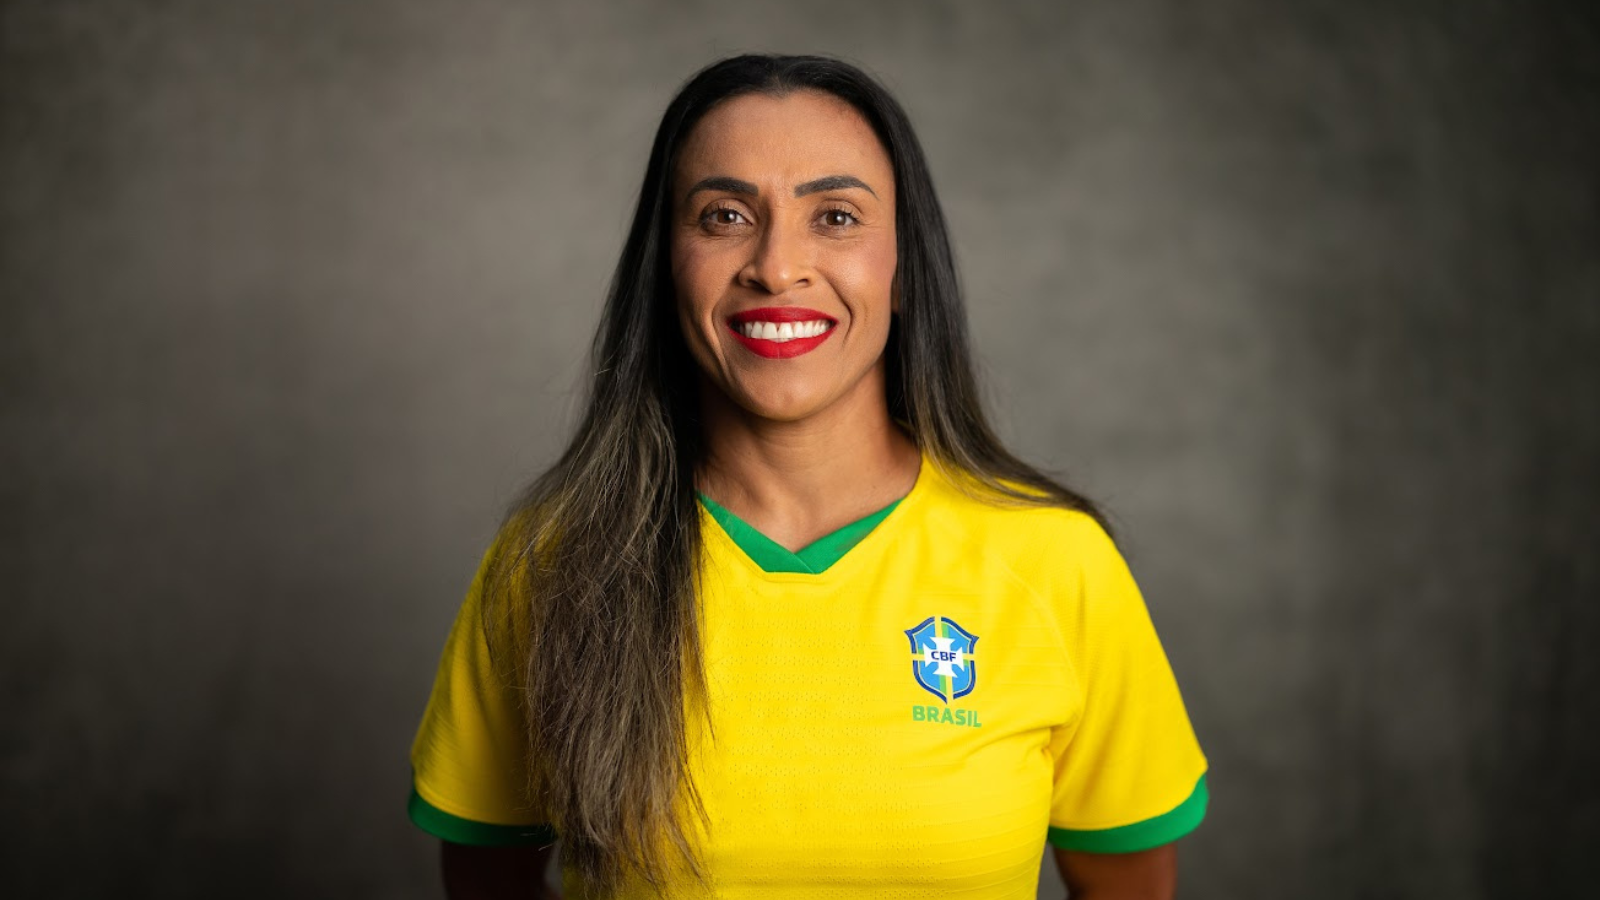 CazéTV anuncia transmissão de todos os jogos da Copa do Mundo Feminina